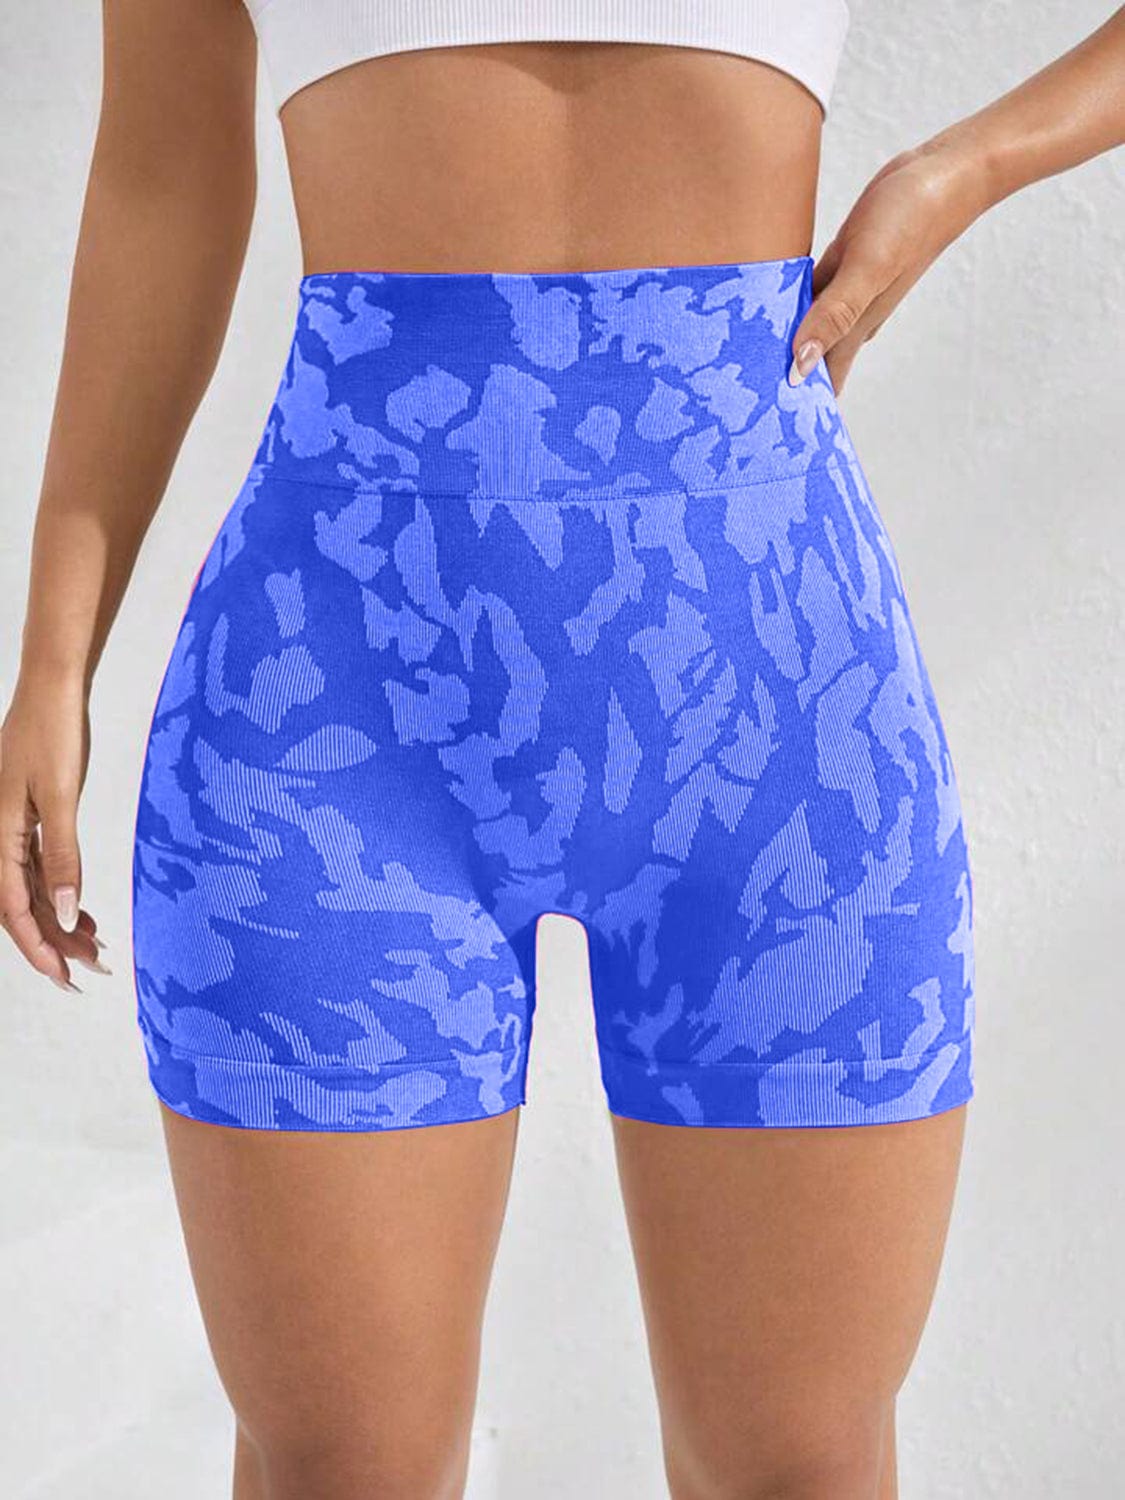 Trendsi ACTIVE SHORTS Printed High Waist Active Shorts